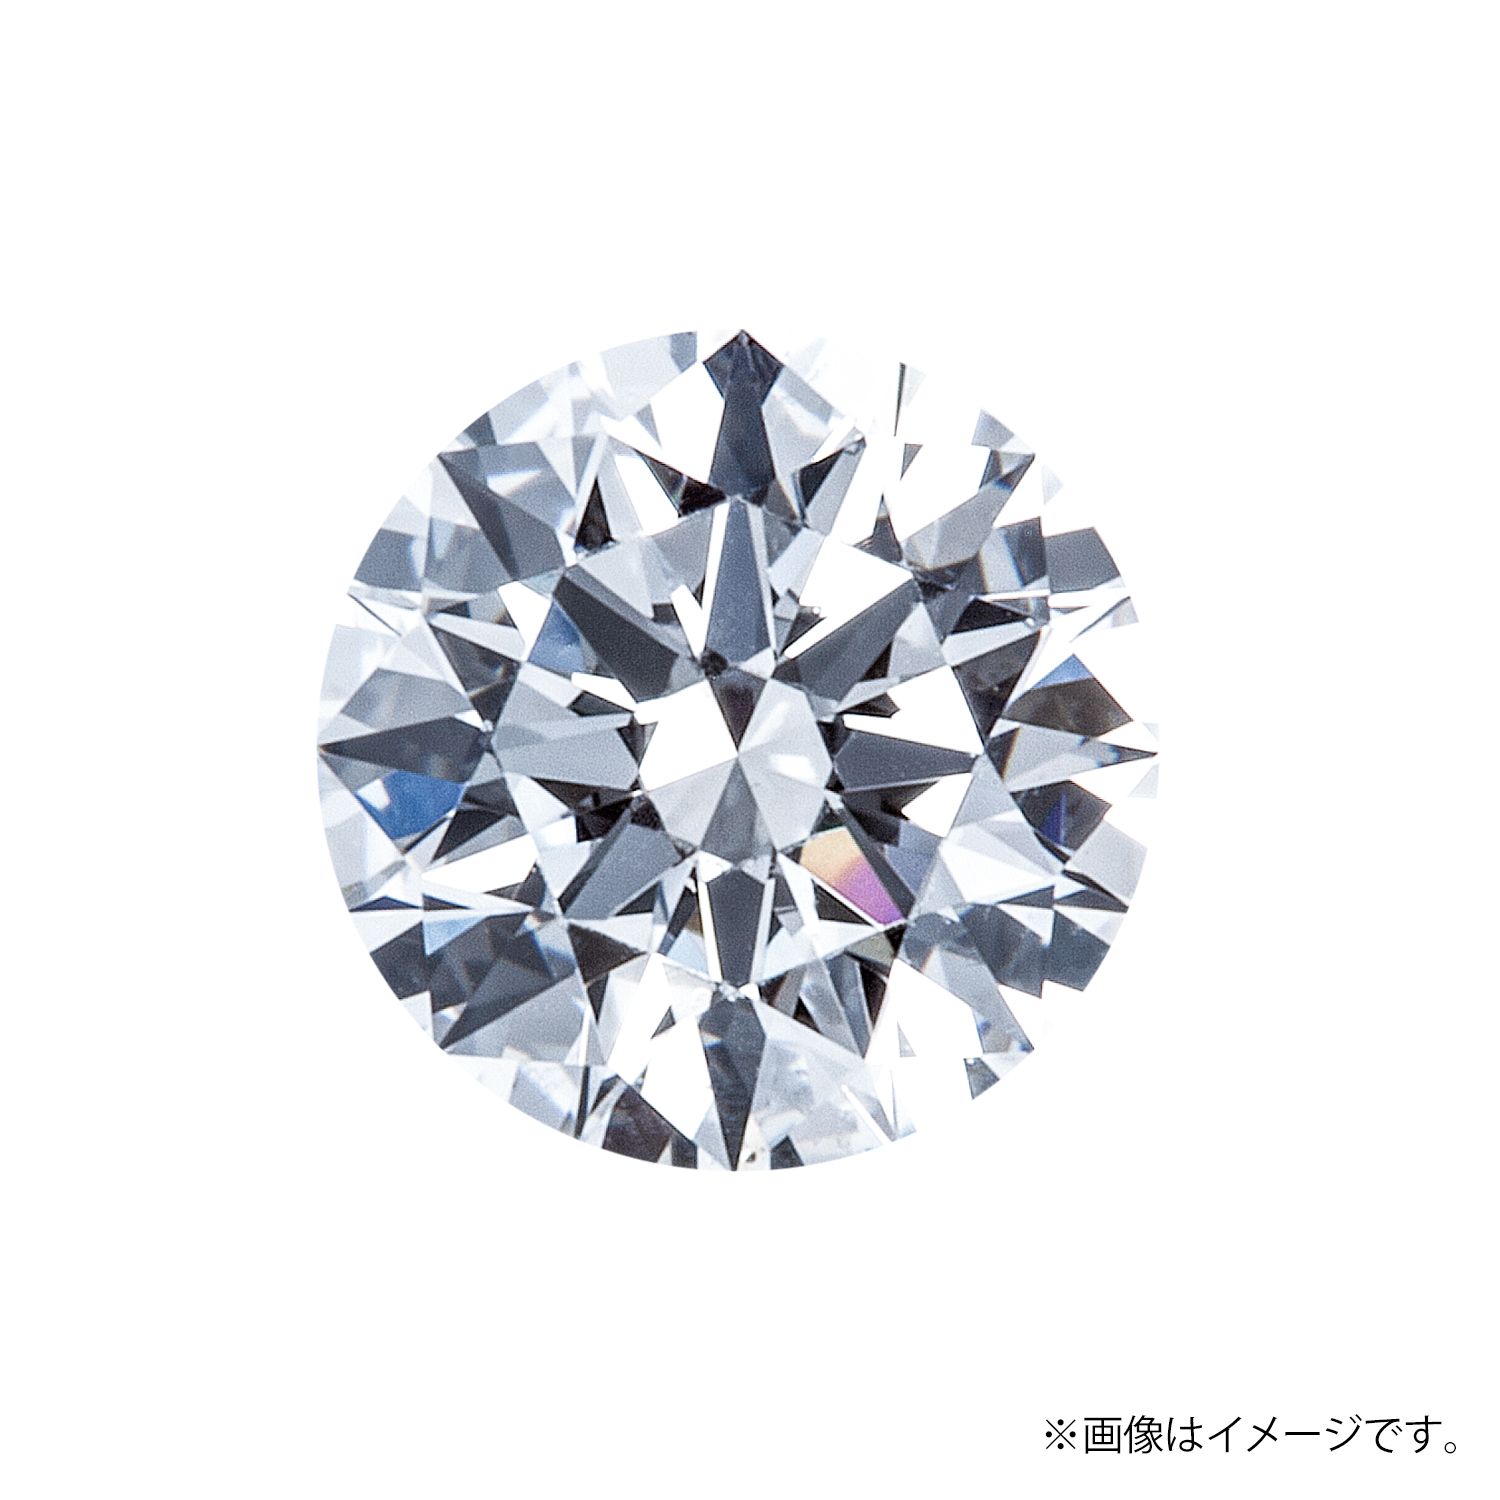 0.233ct Round ダイヤモンド / F / SI2 / GOOD